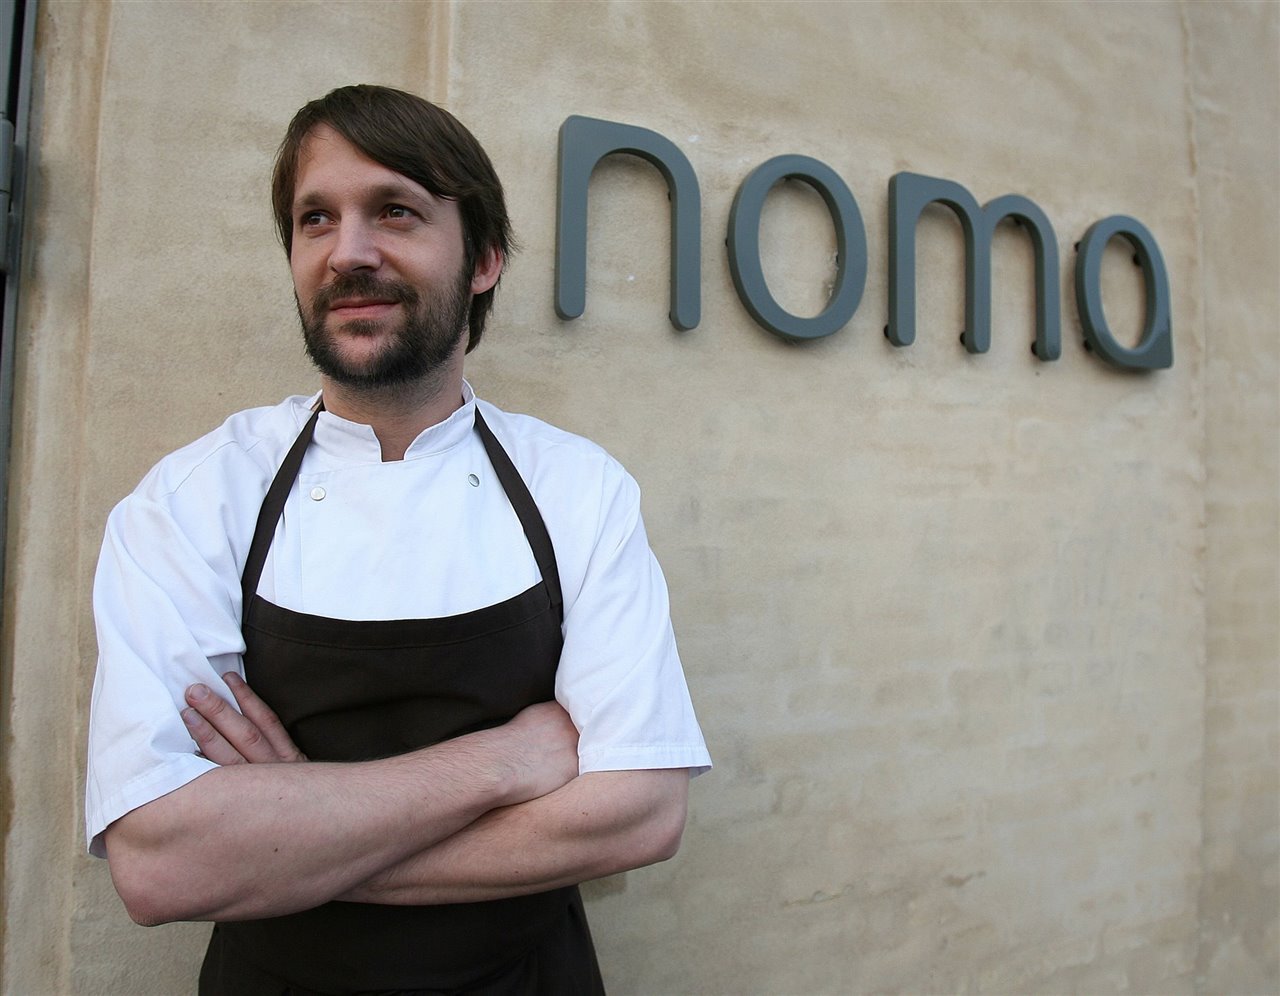 El chef danés René Redzepi, co-propietario de Noma, actualmente el segundo mejor restaurante del mundo, según la lista que elabora cada año la revista británica Restaurant.